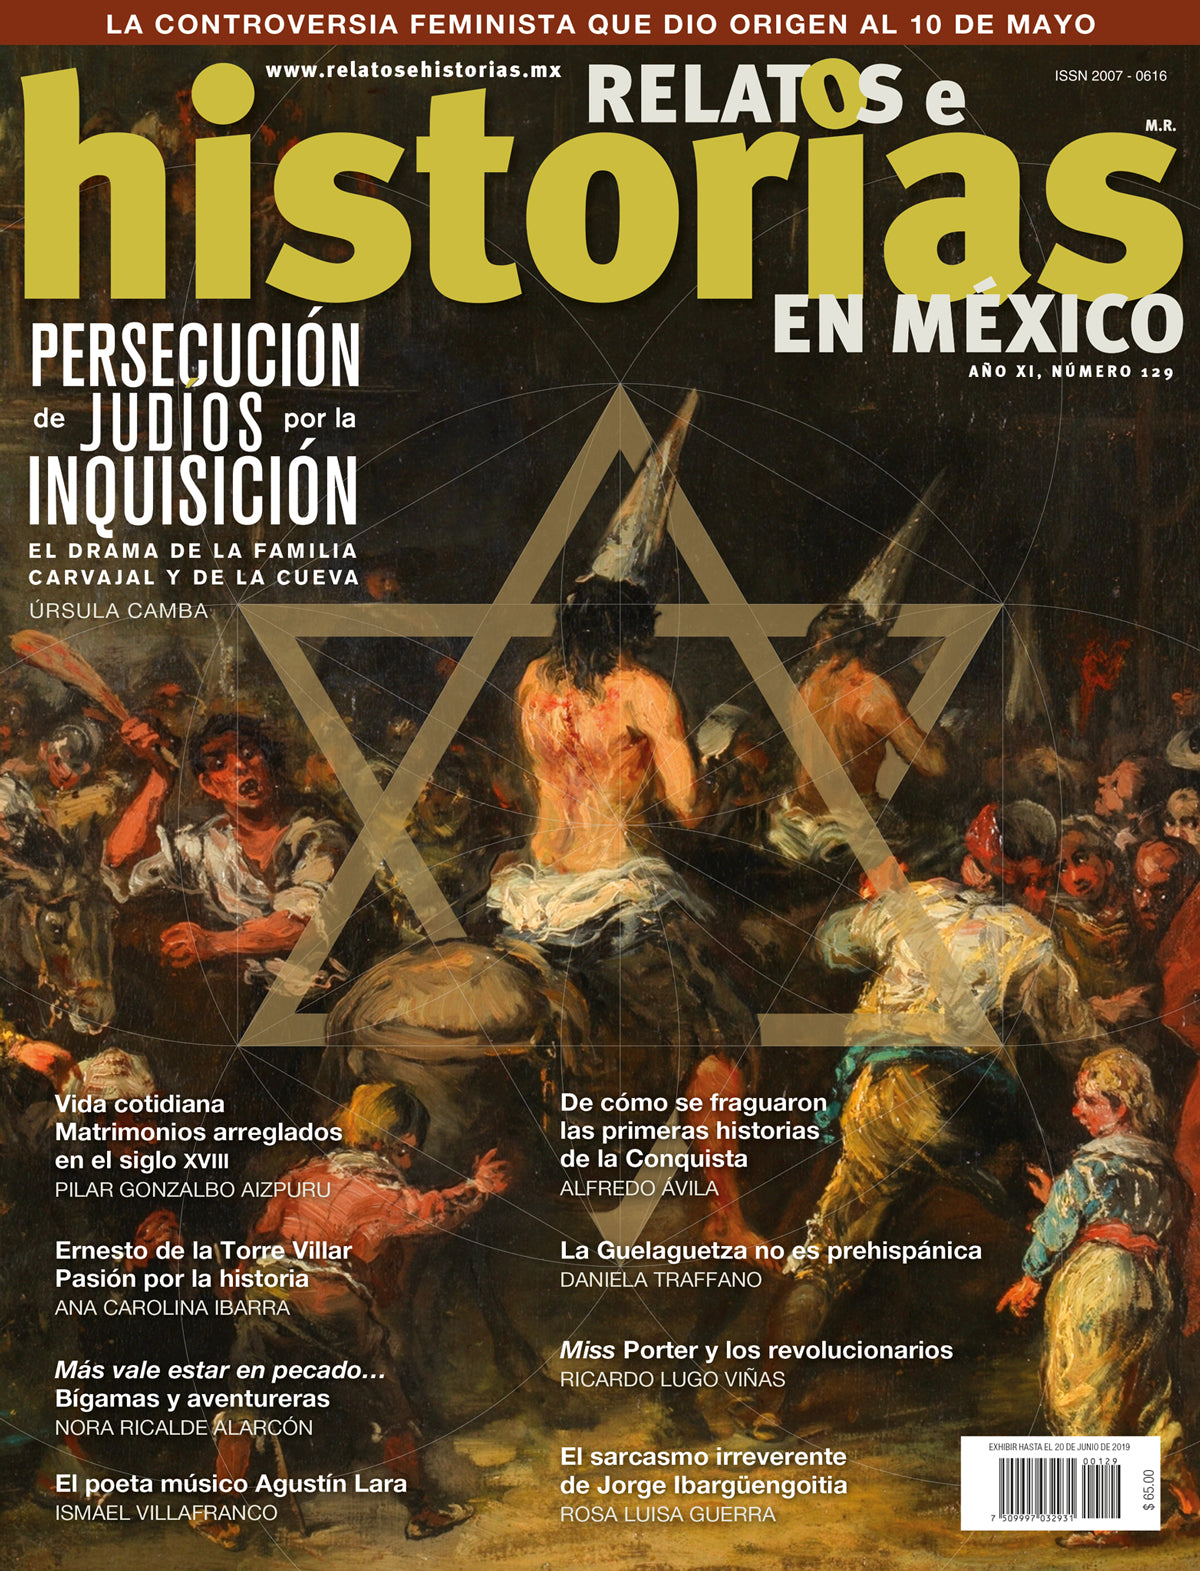 Persecución de Judios por la Inquisición